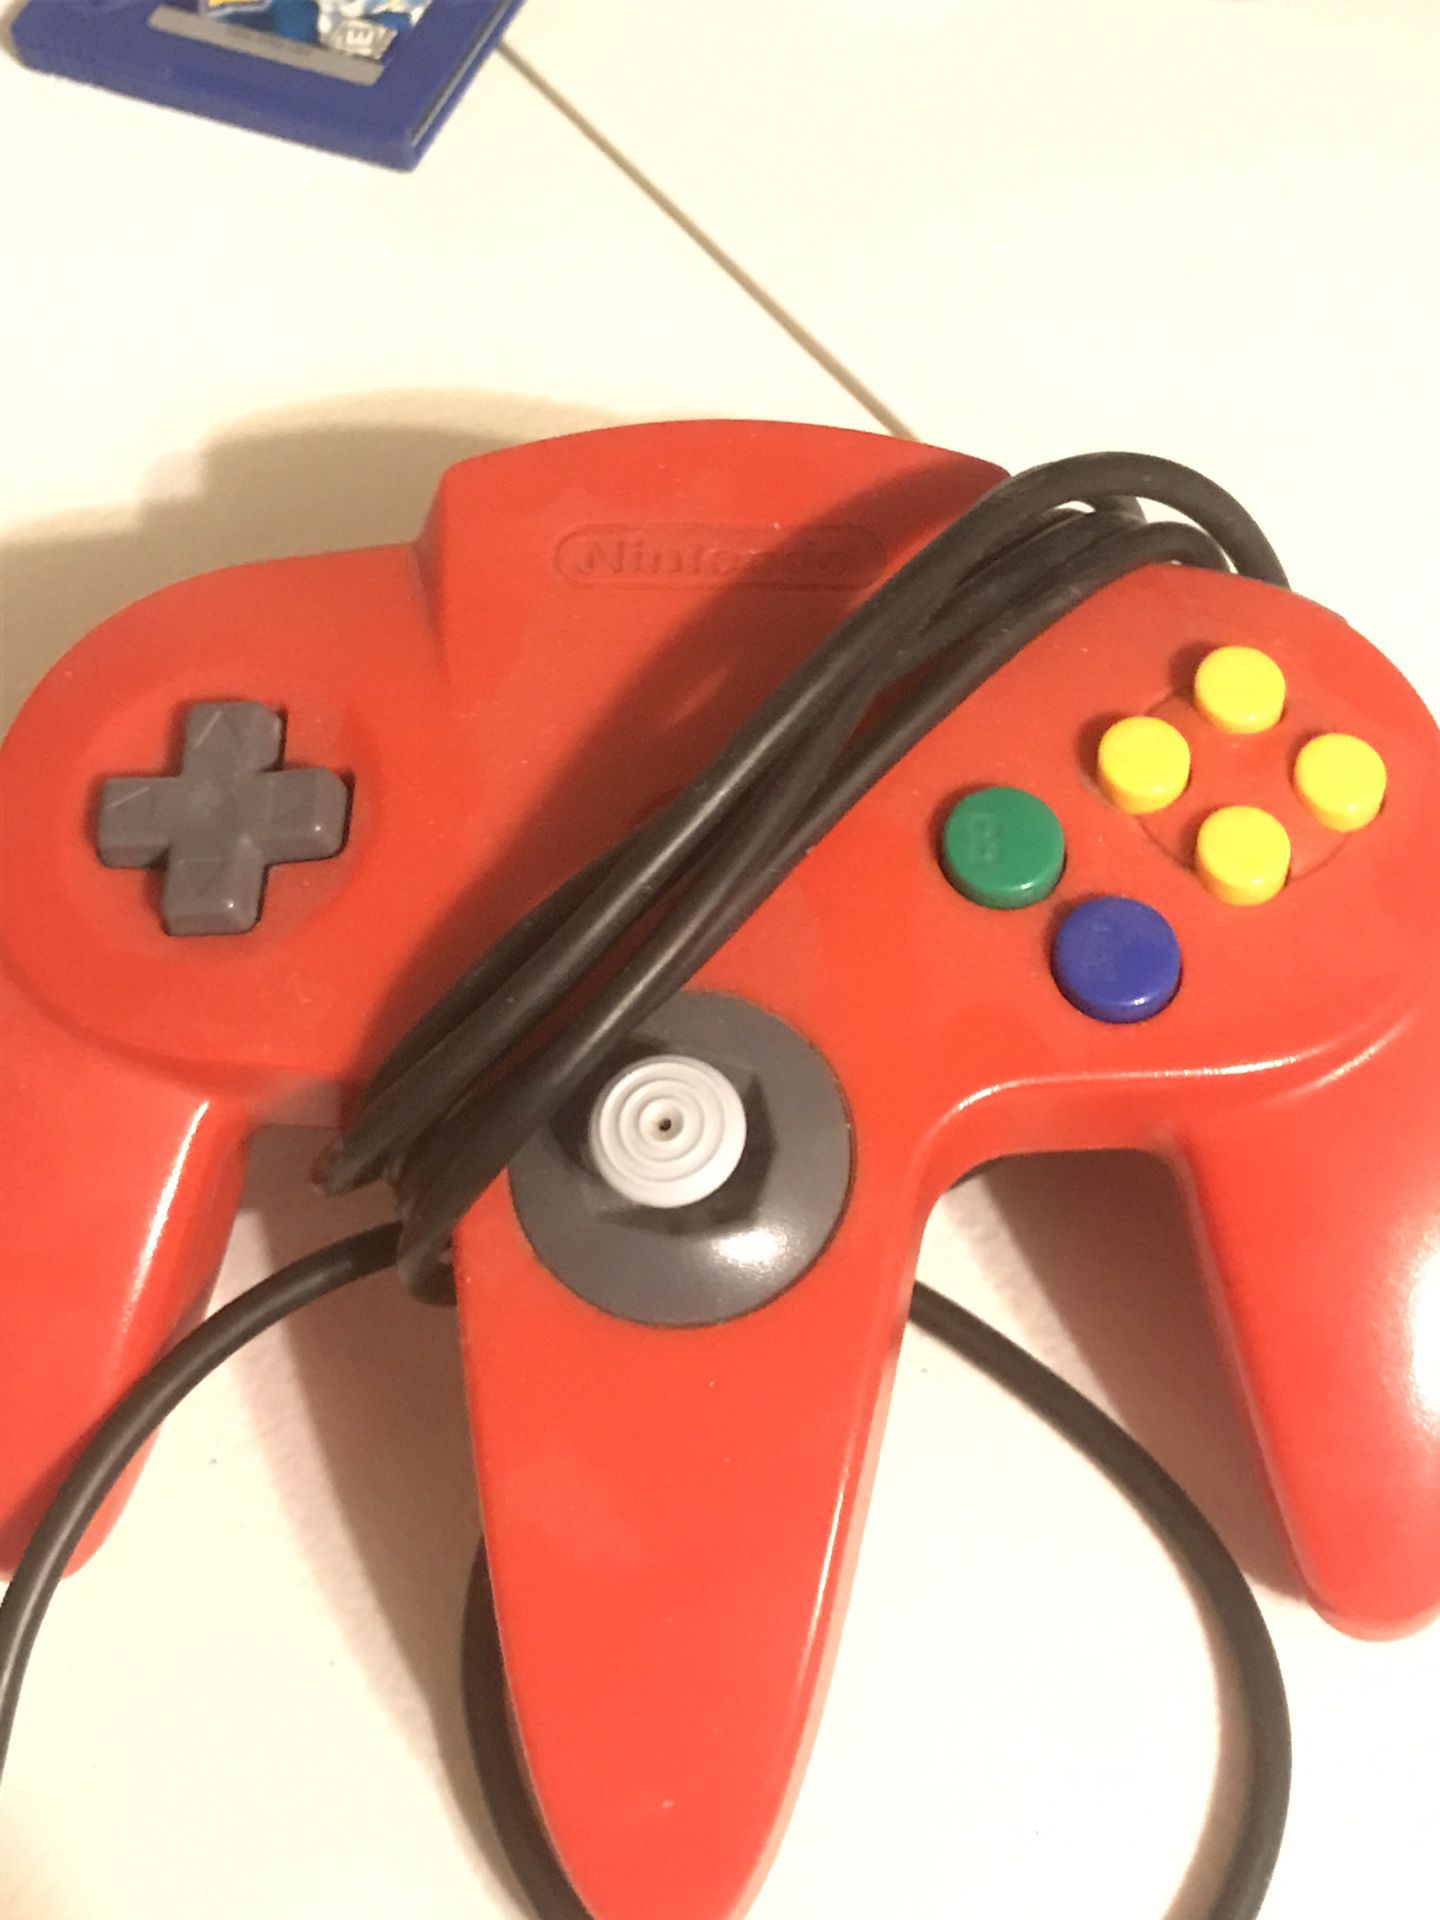 Red Nintendo 64 controller